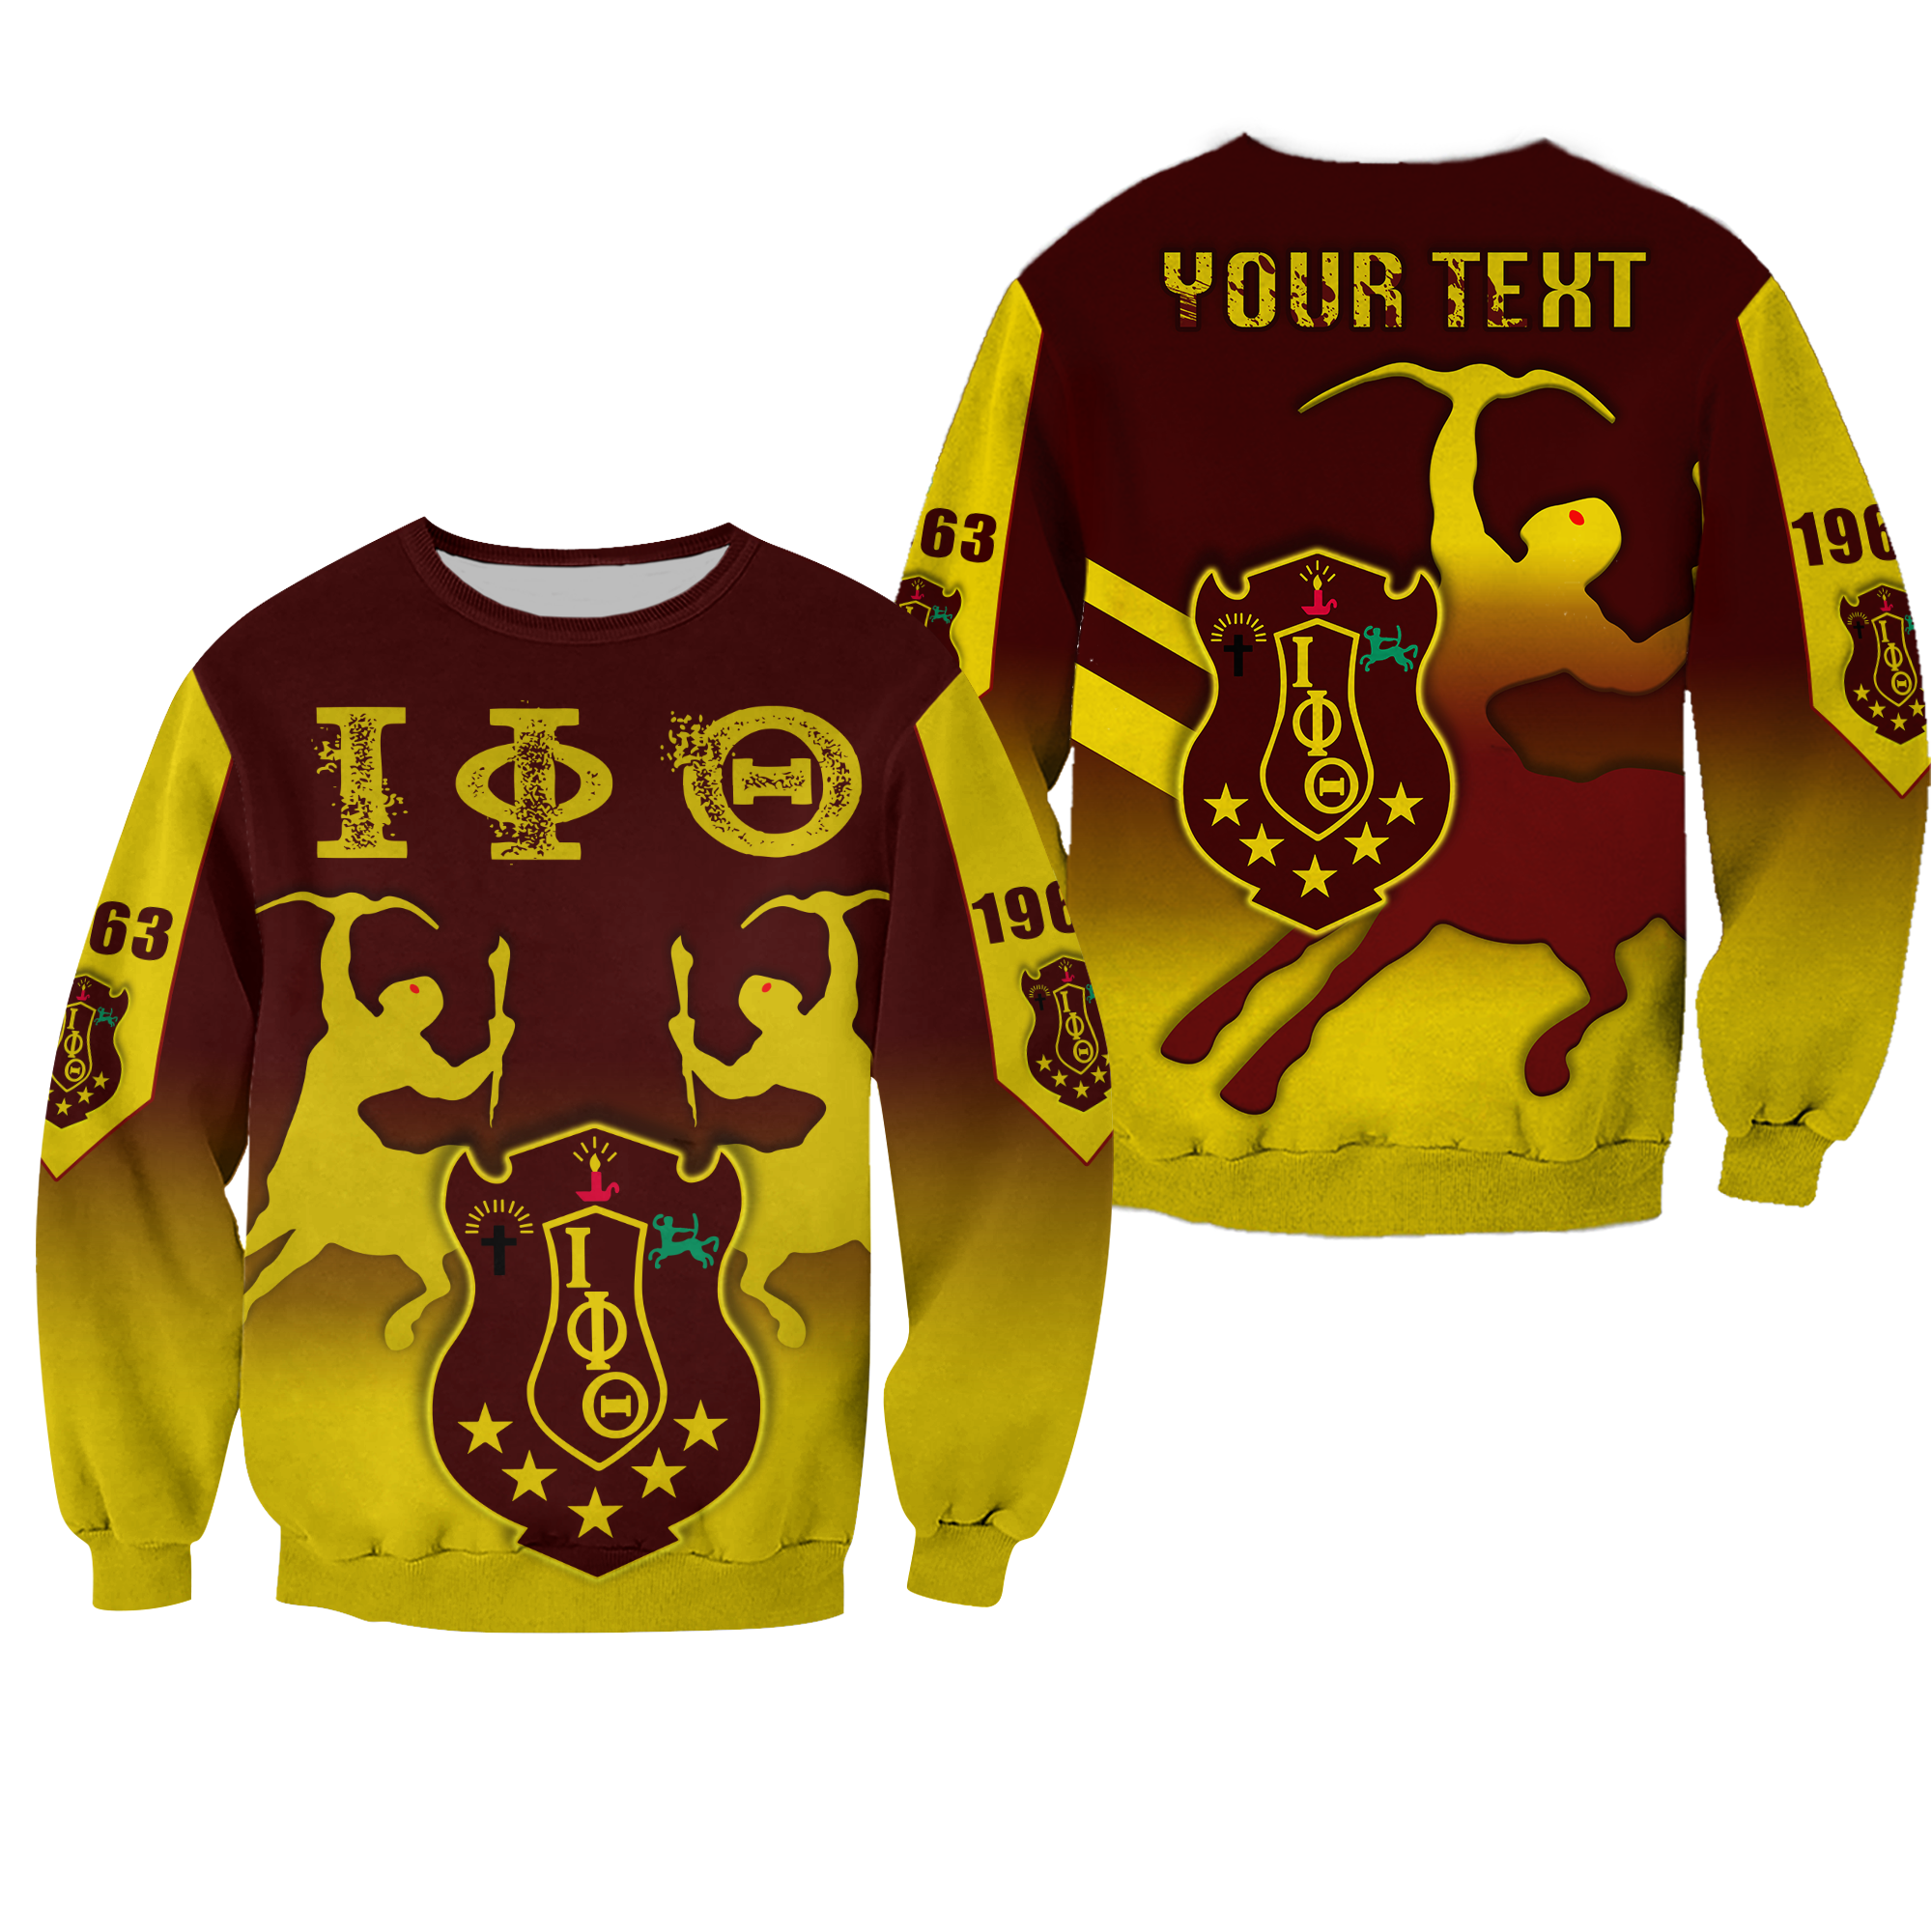 (Custom Personalised) Iota Phi Theta Sweatshirt With Centaur Lt13